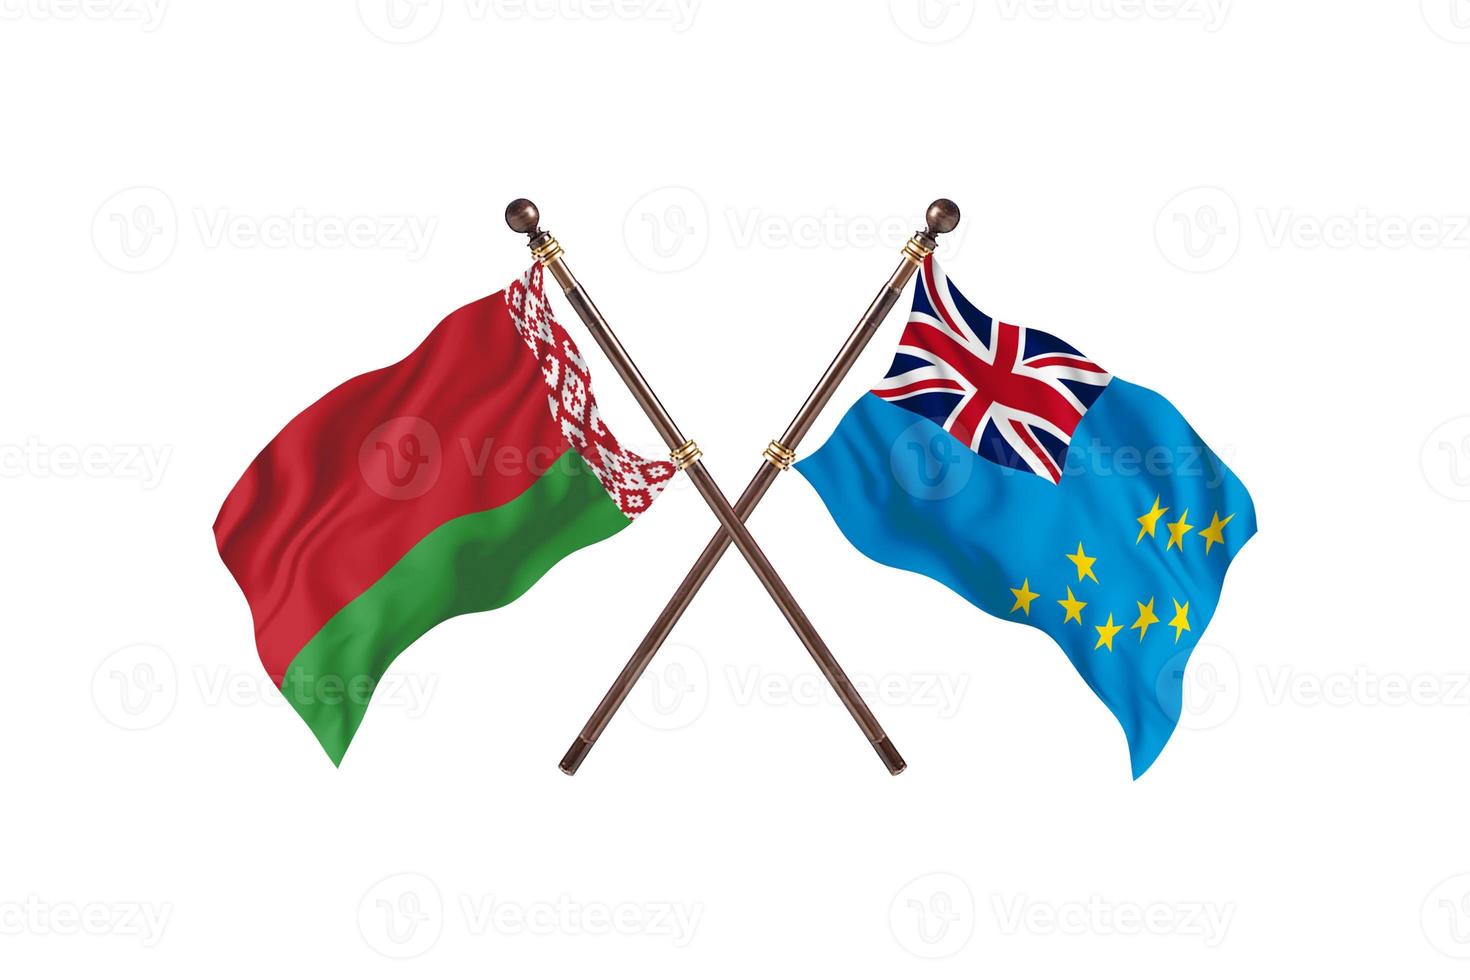 biélorussie contre tuvalu deux drapeaux de pays photo